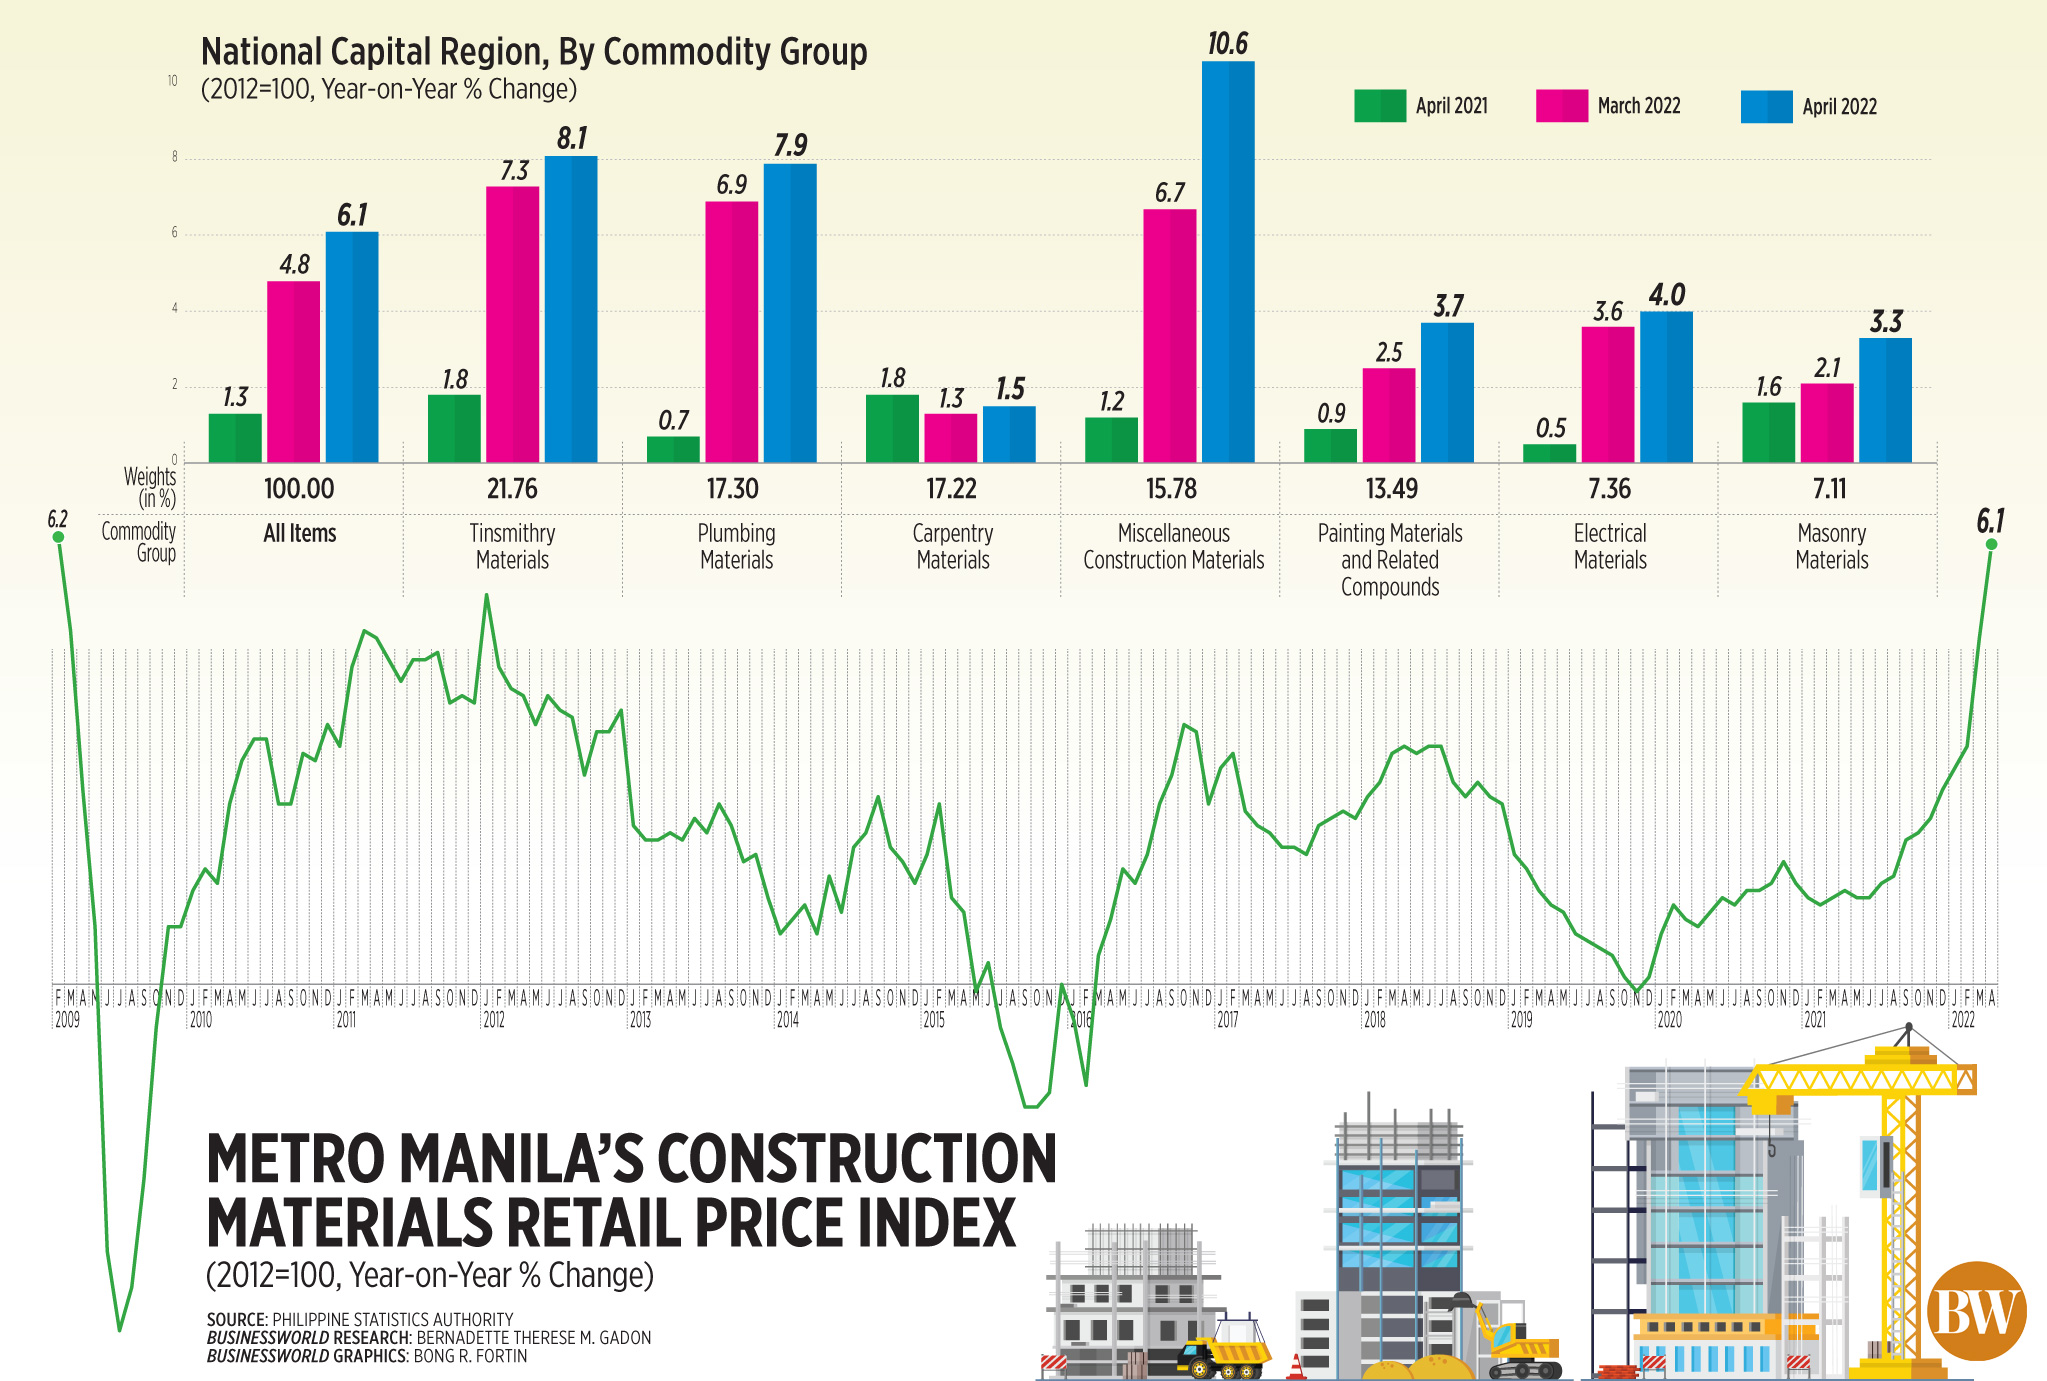 Metro Manila's construction materials retail price index